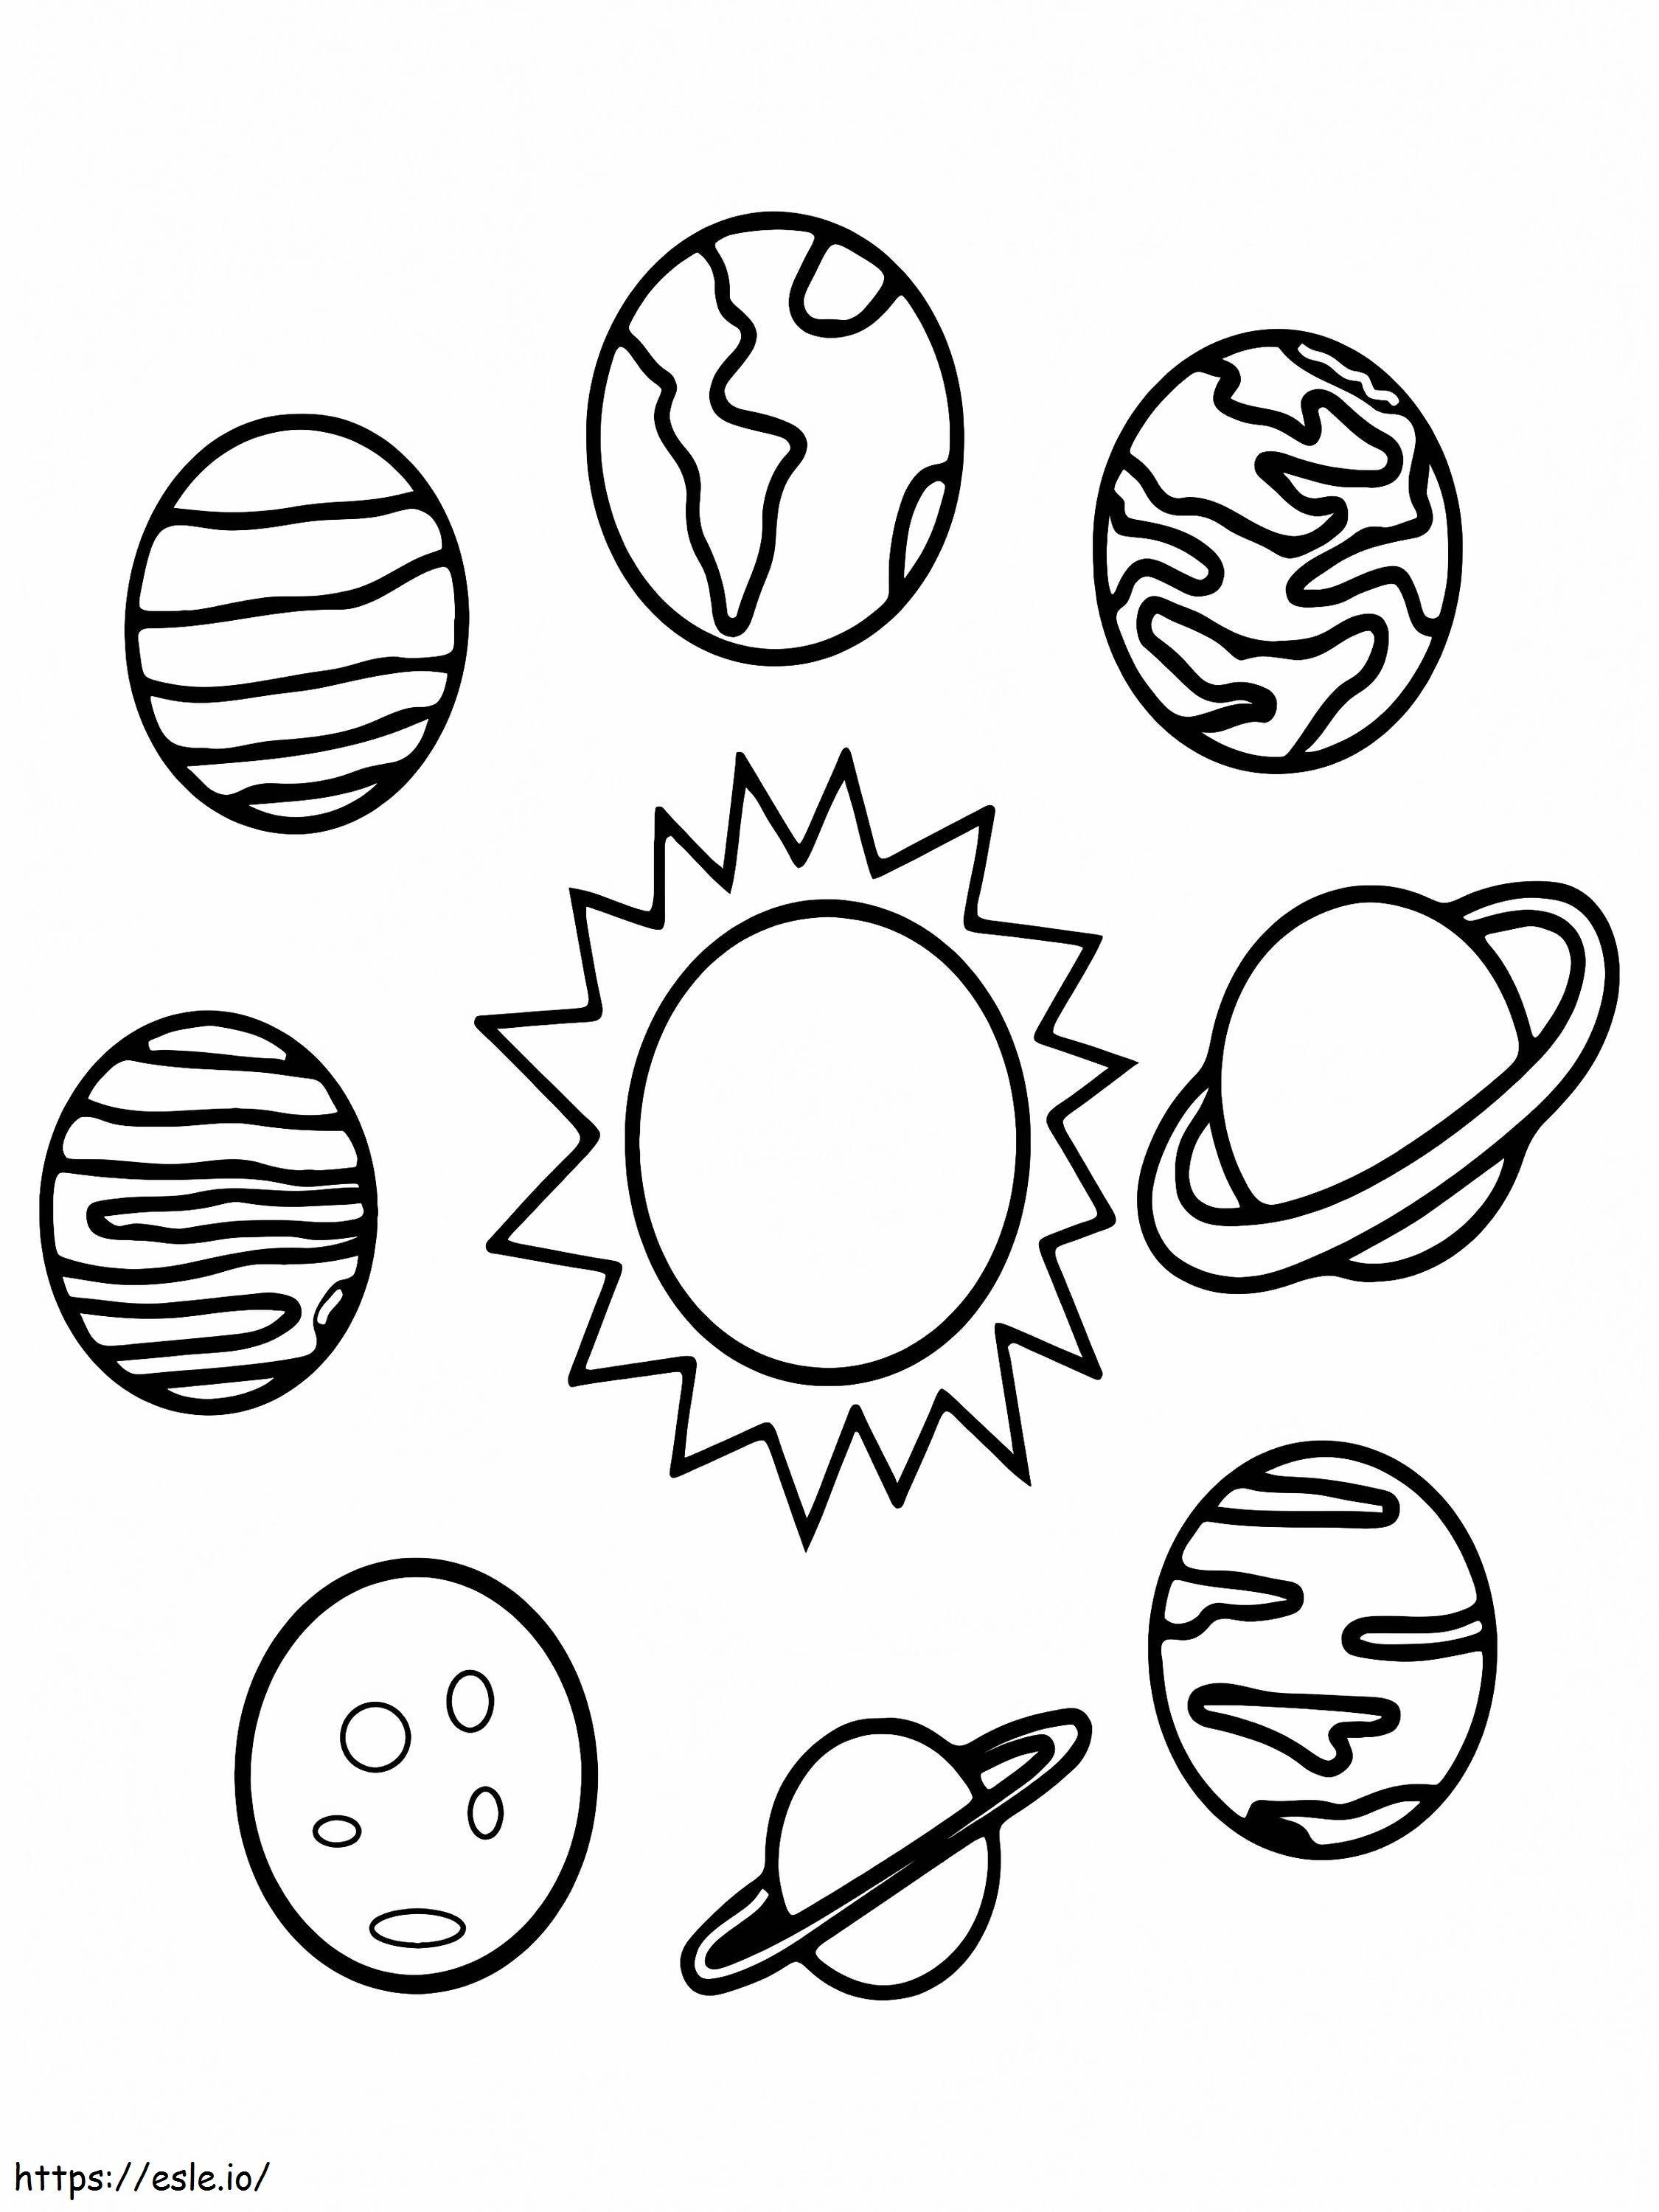 Otto pianeti nel sistema solare da colorare